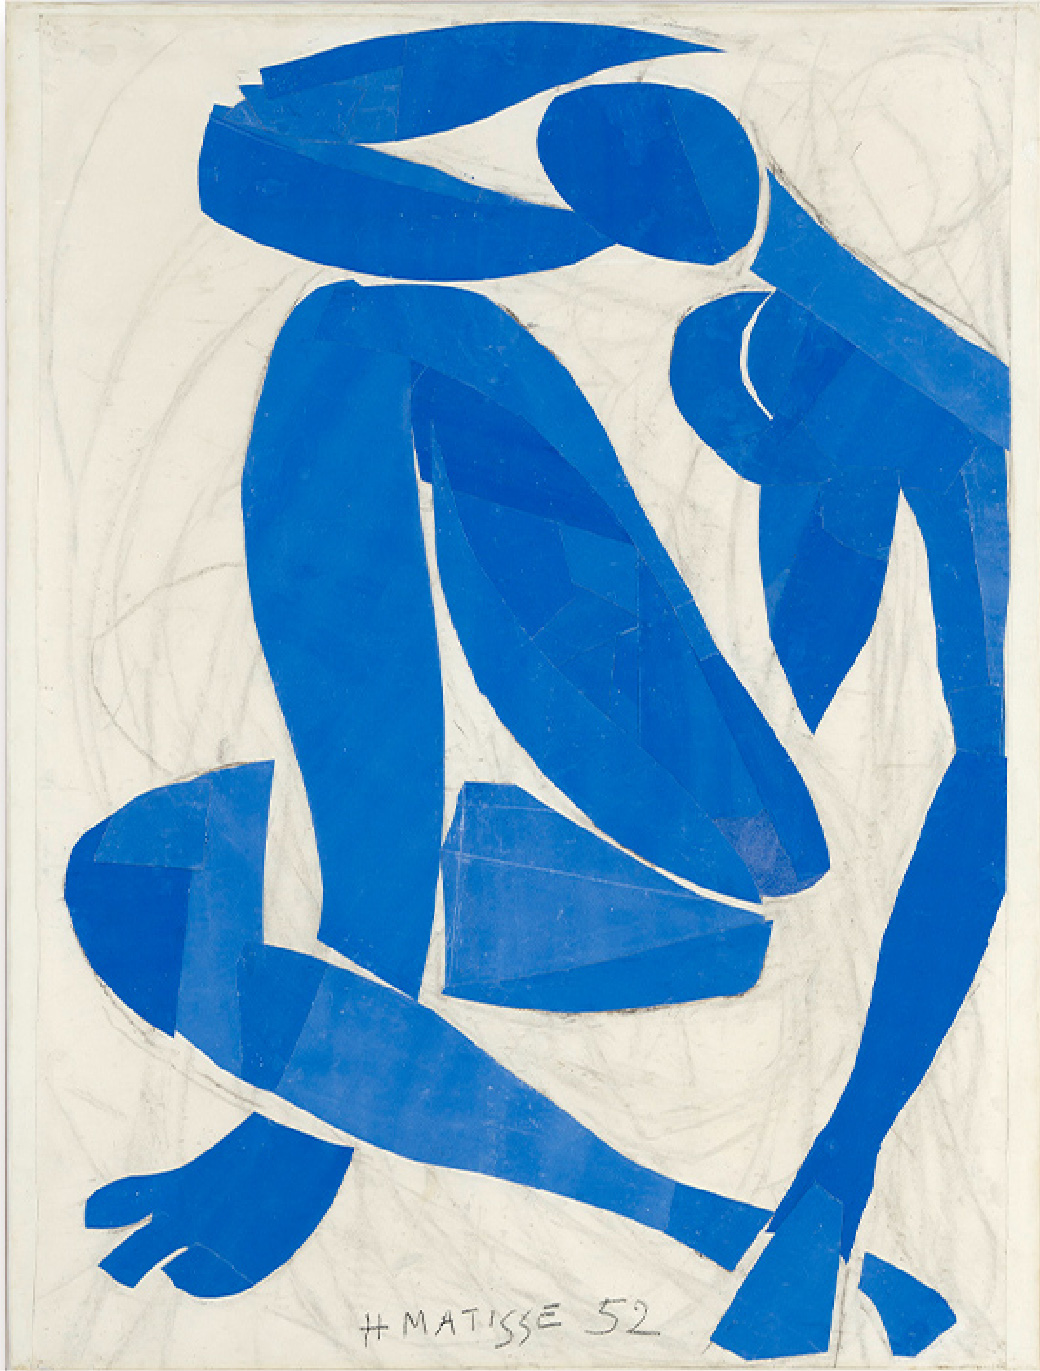 アンリ・マティス《ブルー・ヌード IV》1952年 切り紙絵、103 × 74 cm、オルセー美術館蔵（ニース市マティス美術館寄託） © Succession H. Matisse　Photo: François Fernandez